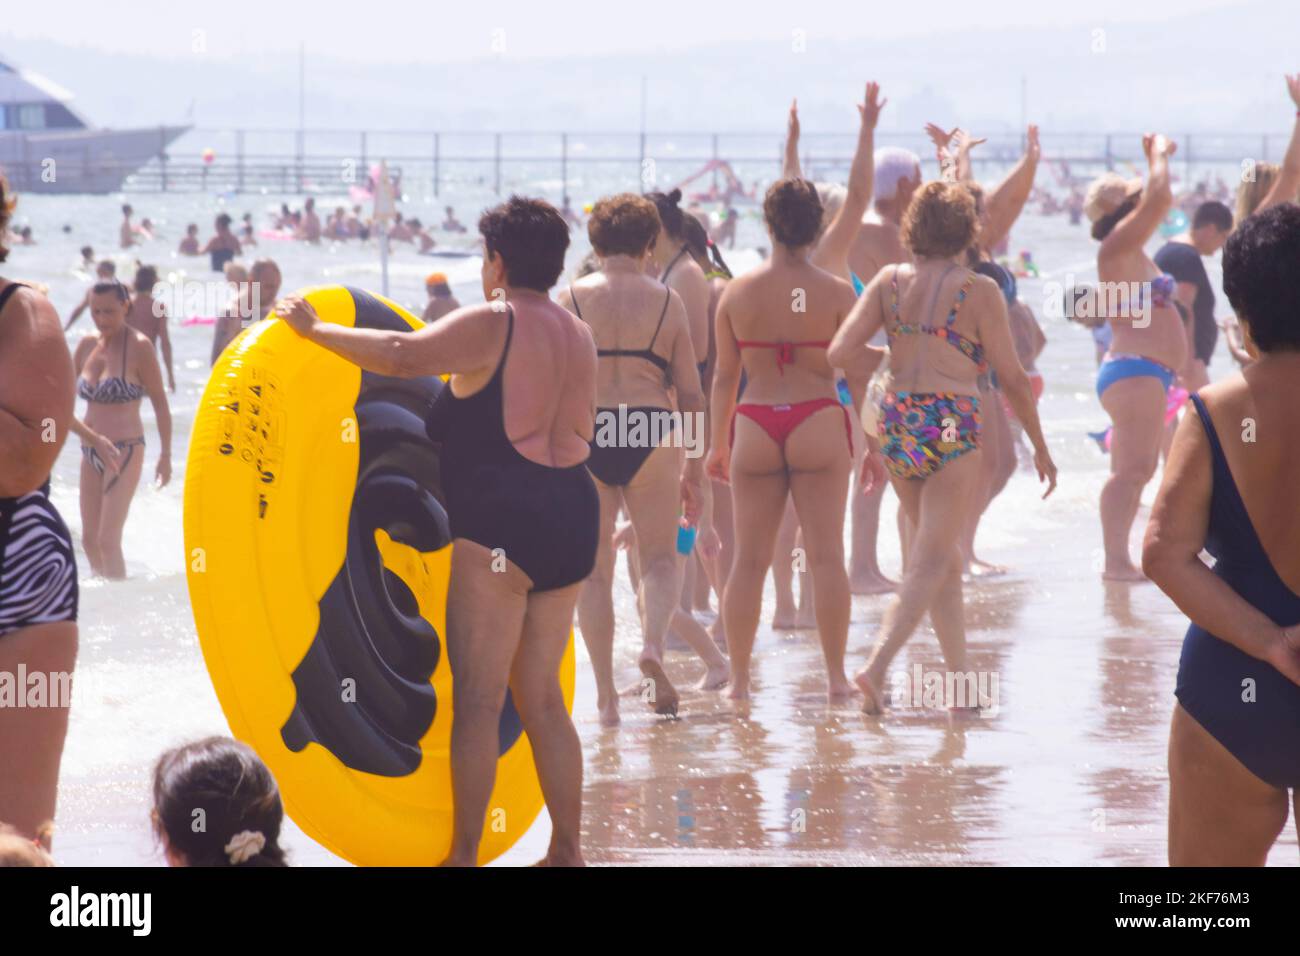 Plage avec bains en été. Rimini, Italie, image éditoriale. Photo de haute qualité Banque D'Images